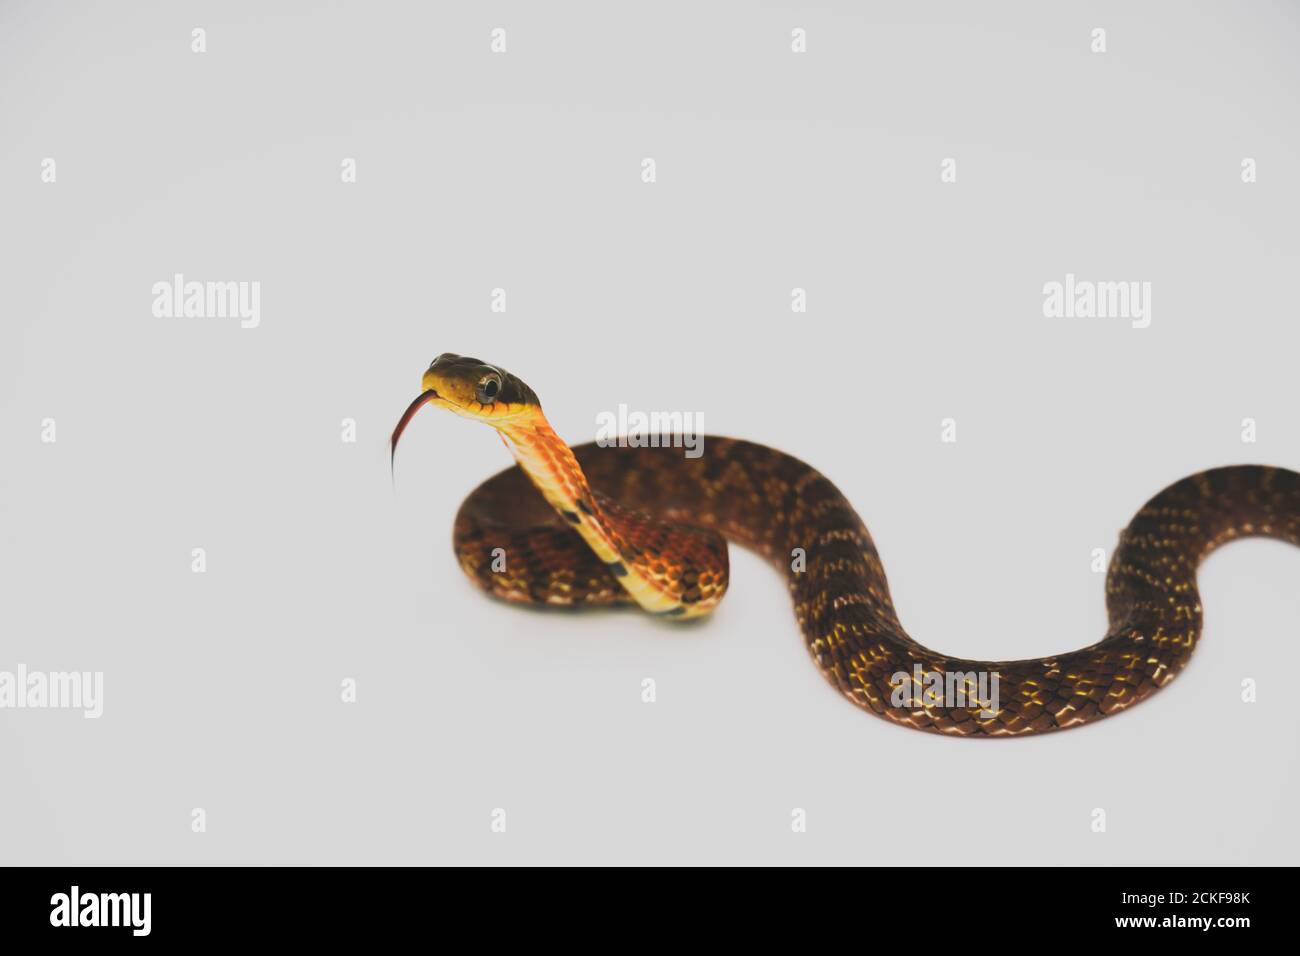 Falso cobra (Pseudoxenodon Macrops) sullo studio di sfondo bianco Foto Stock